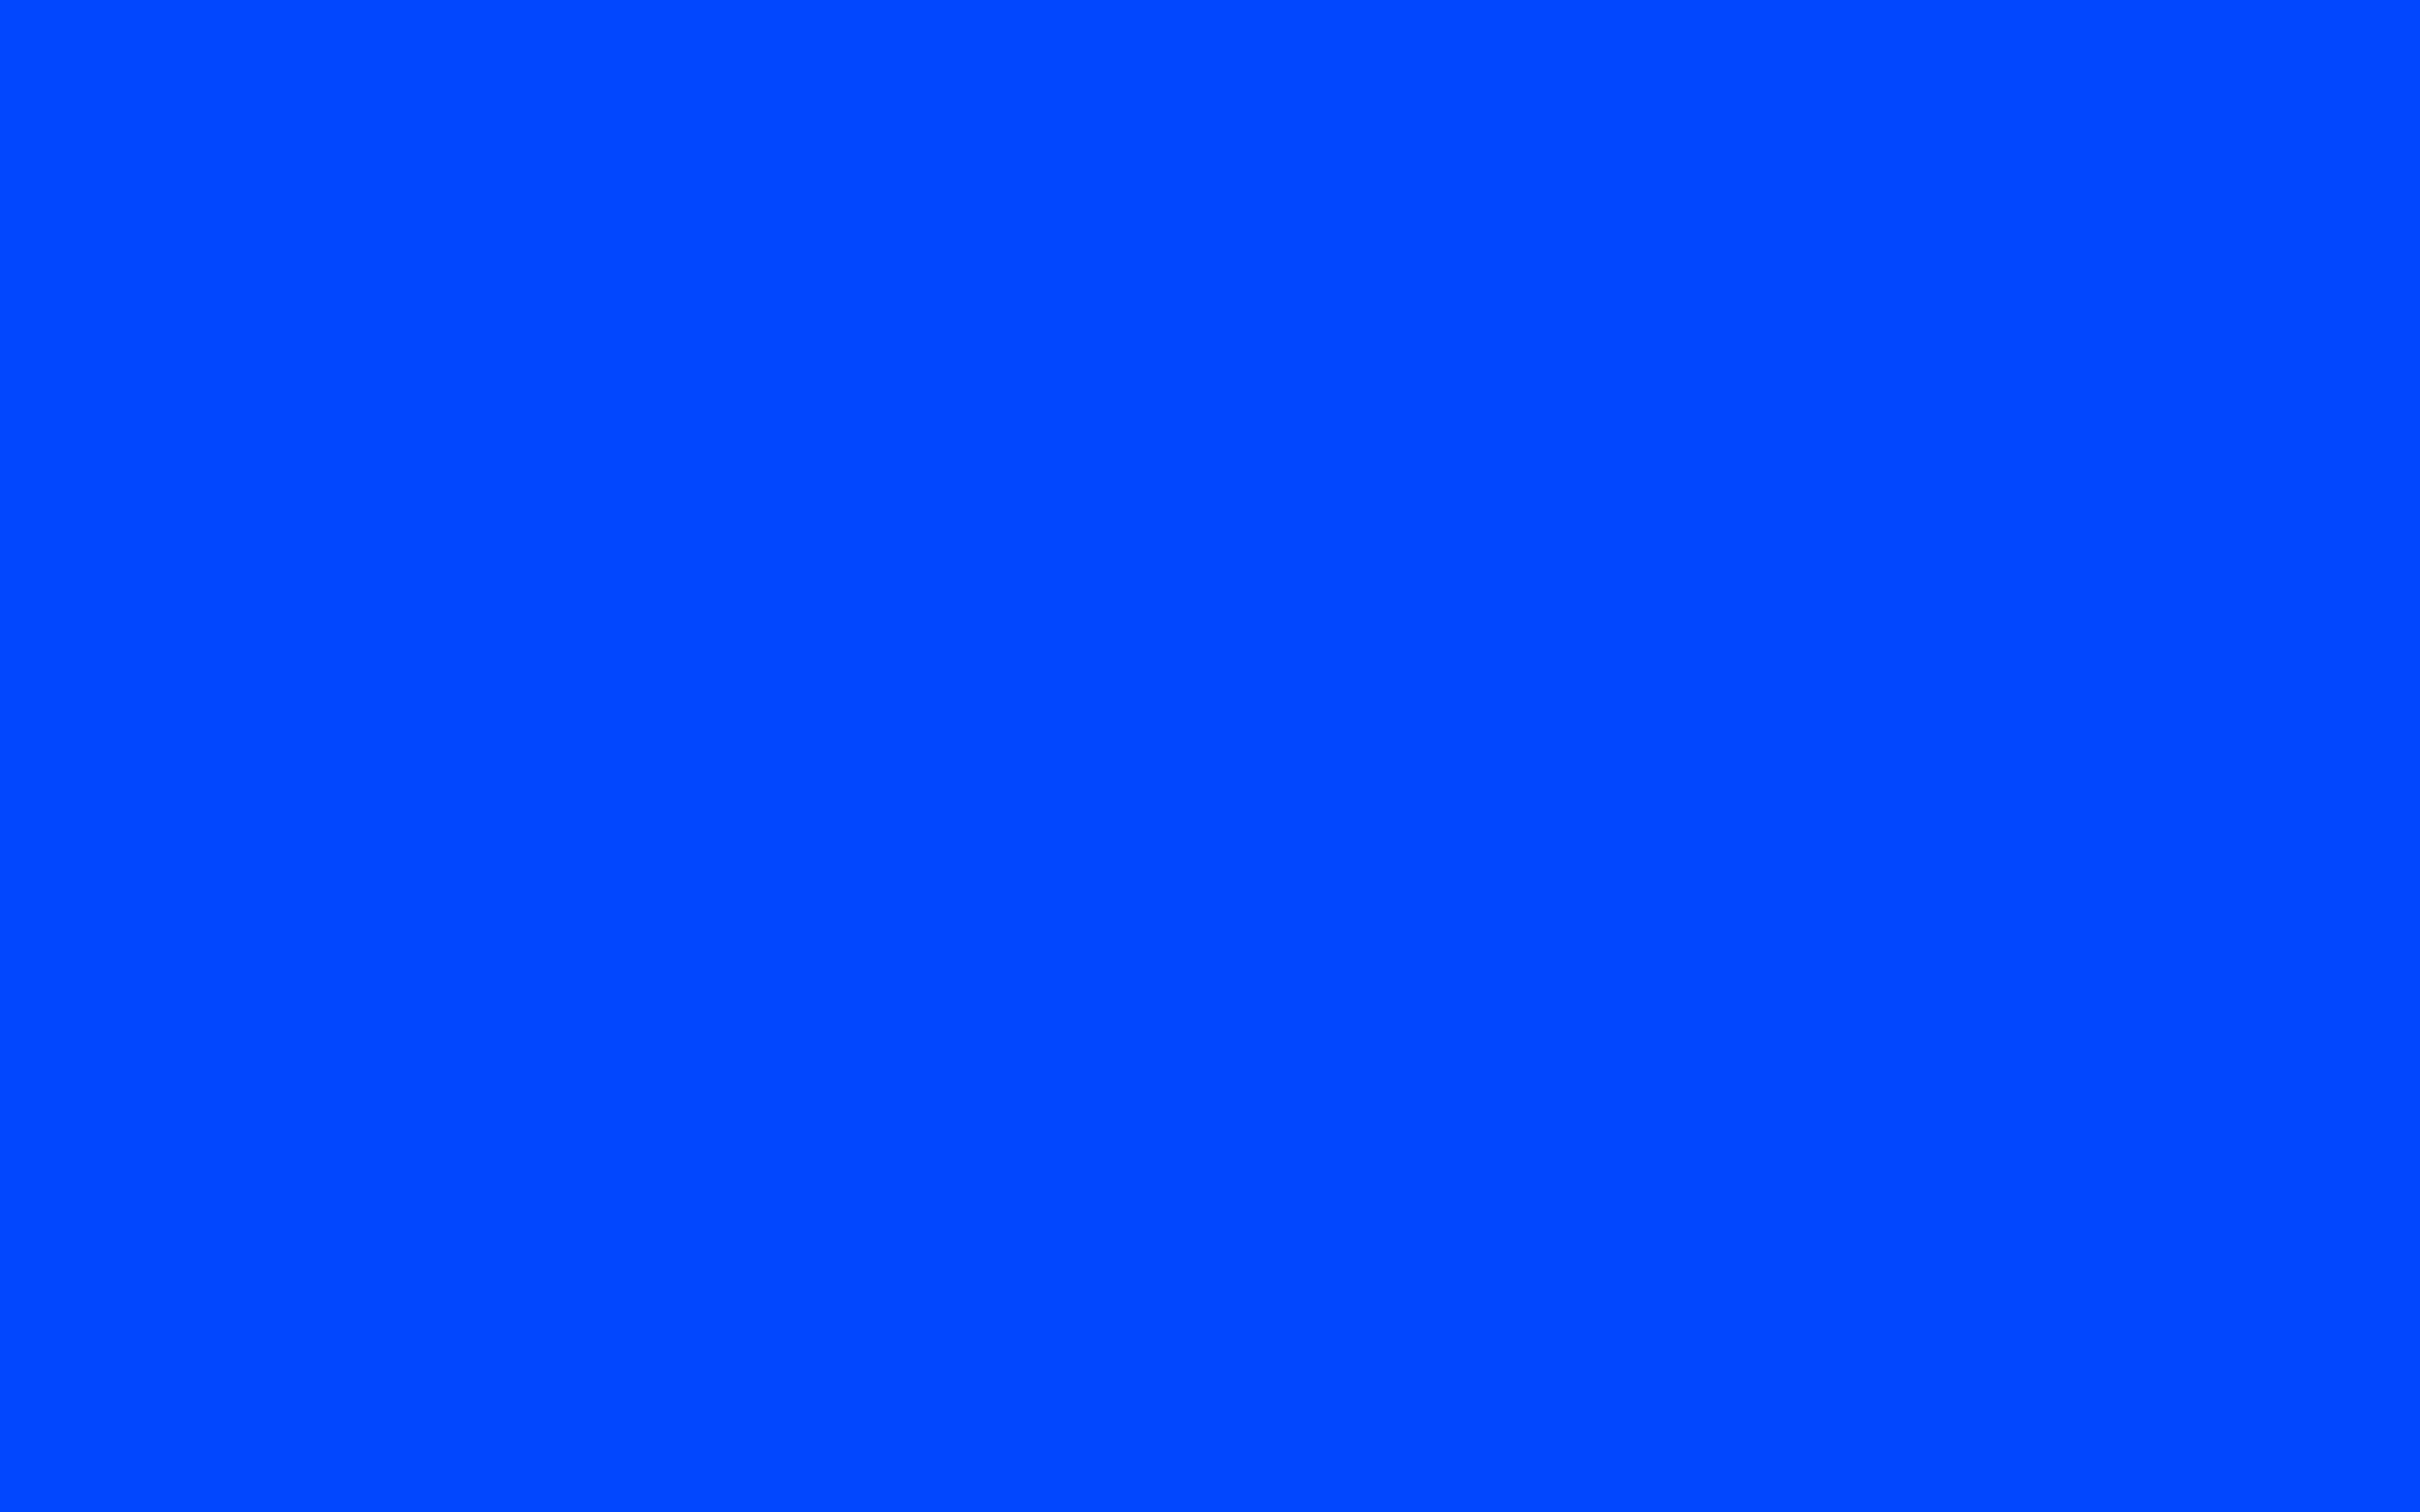 Background Color Solid Blue Background Image